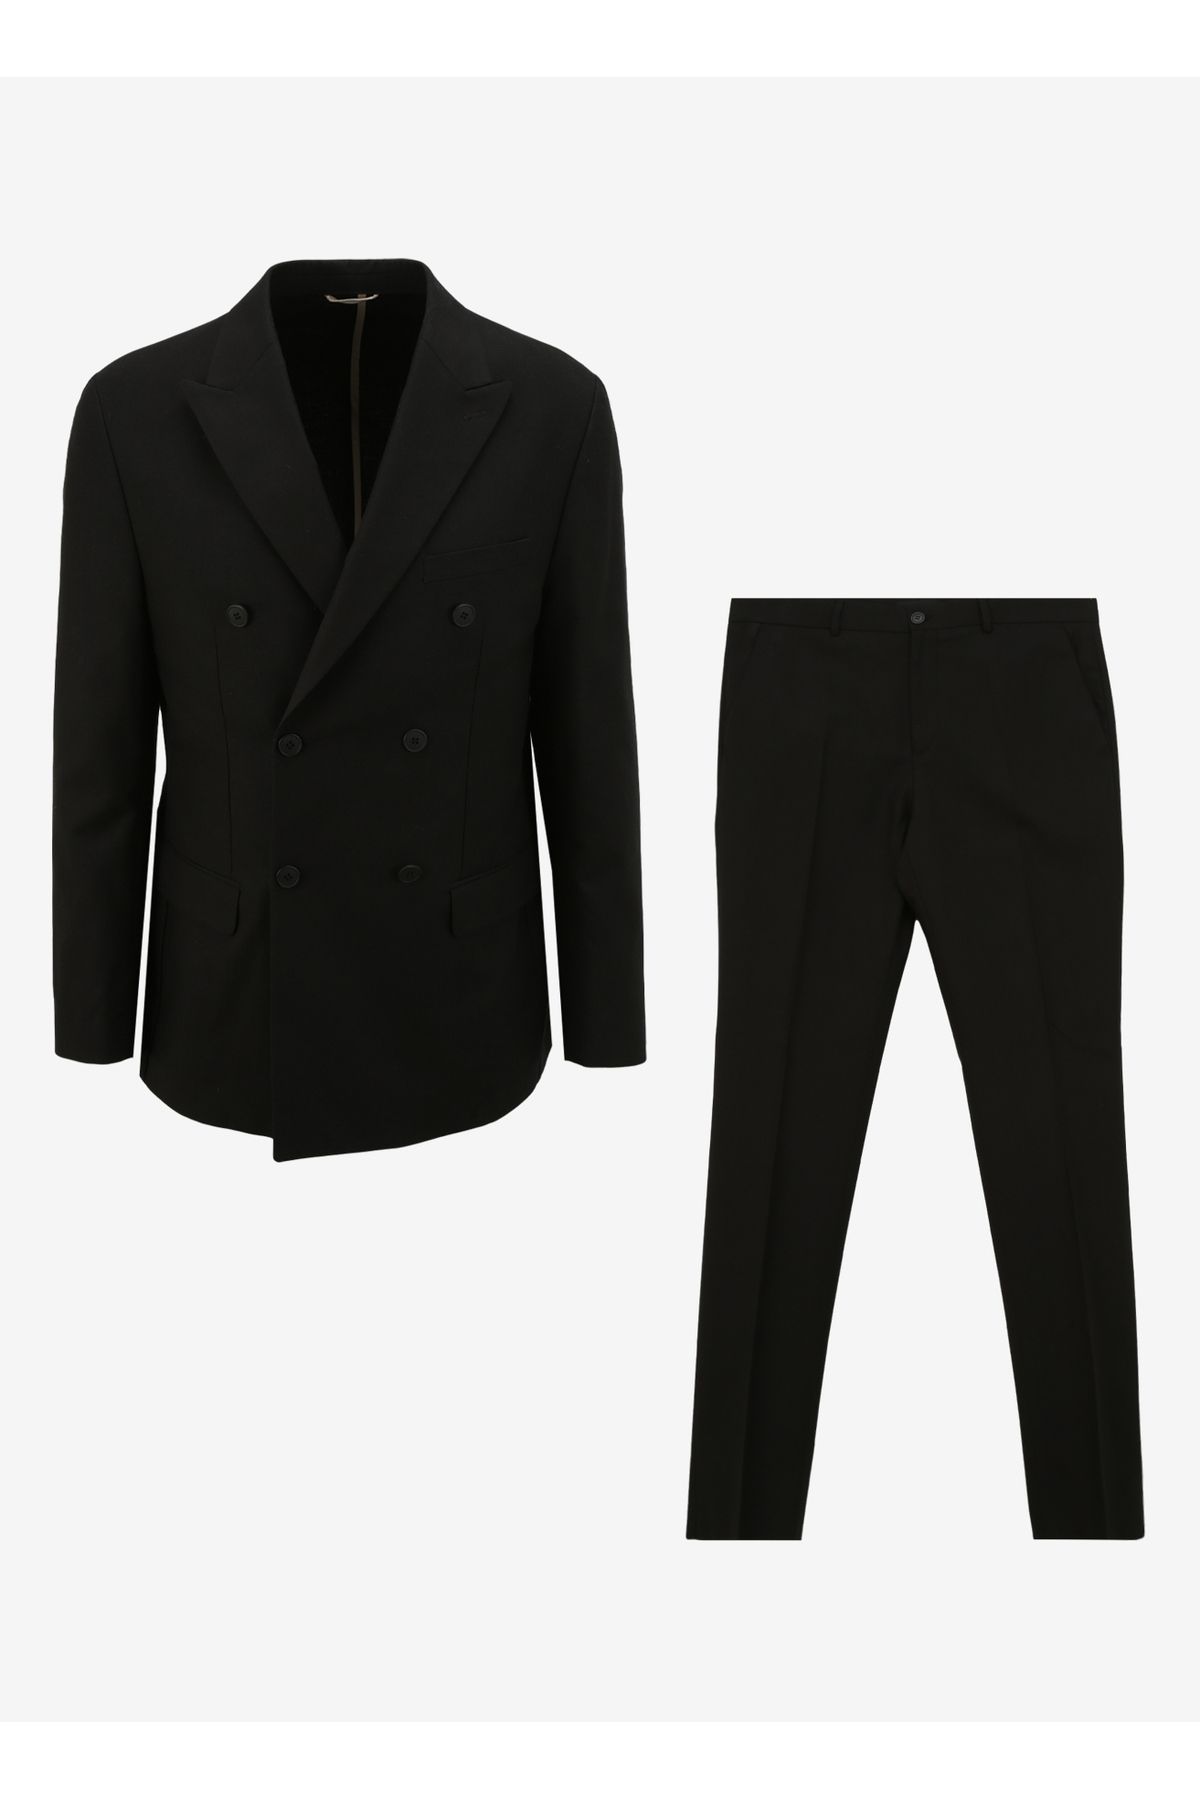 Fabrika Normal Bel Basic Siyah Erkek Takım Elbise F4SM-TKM 03